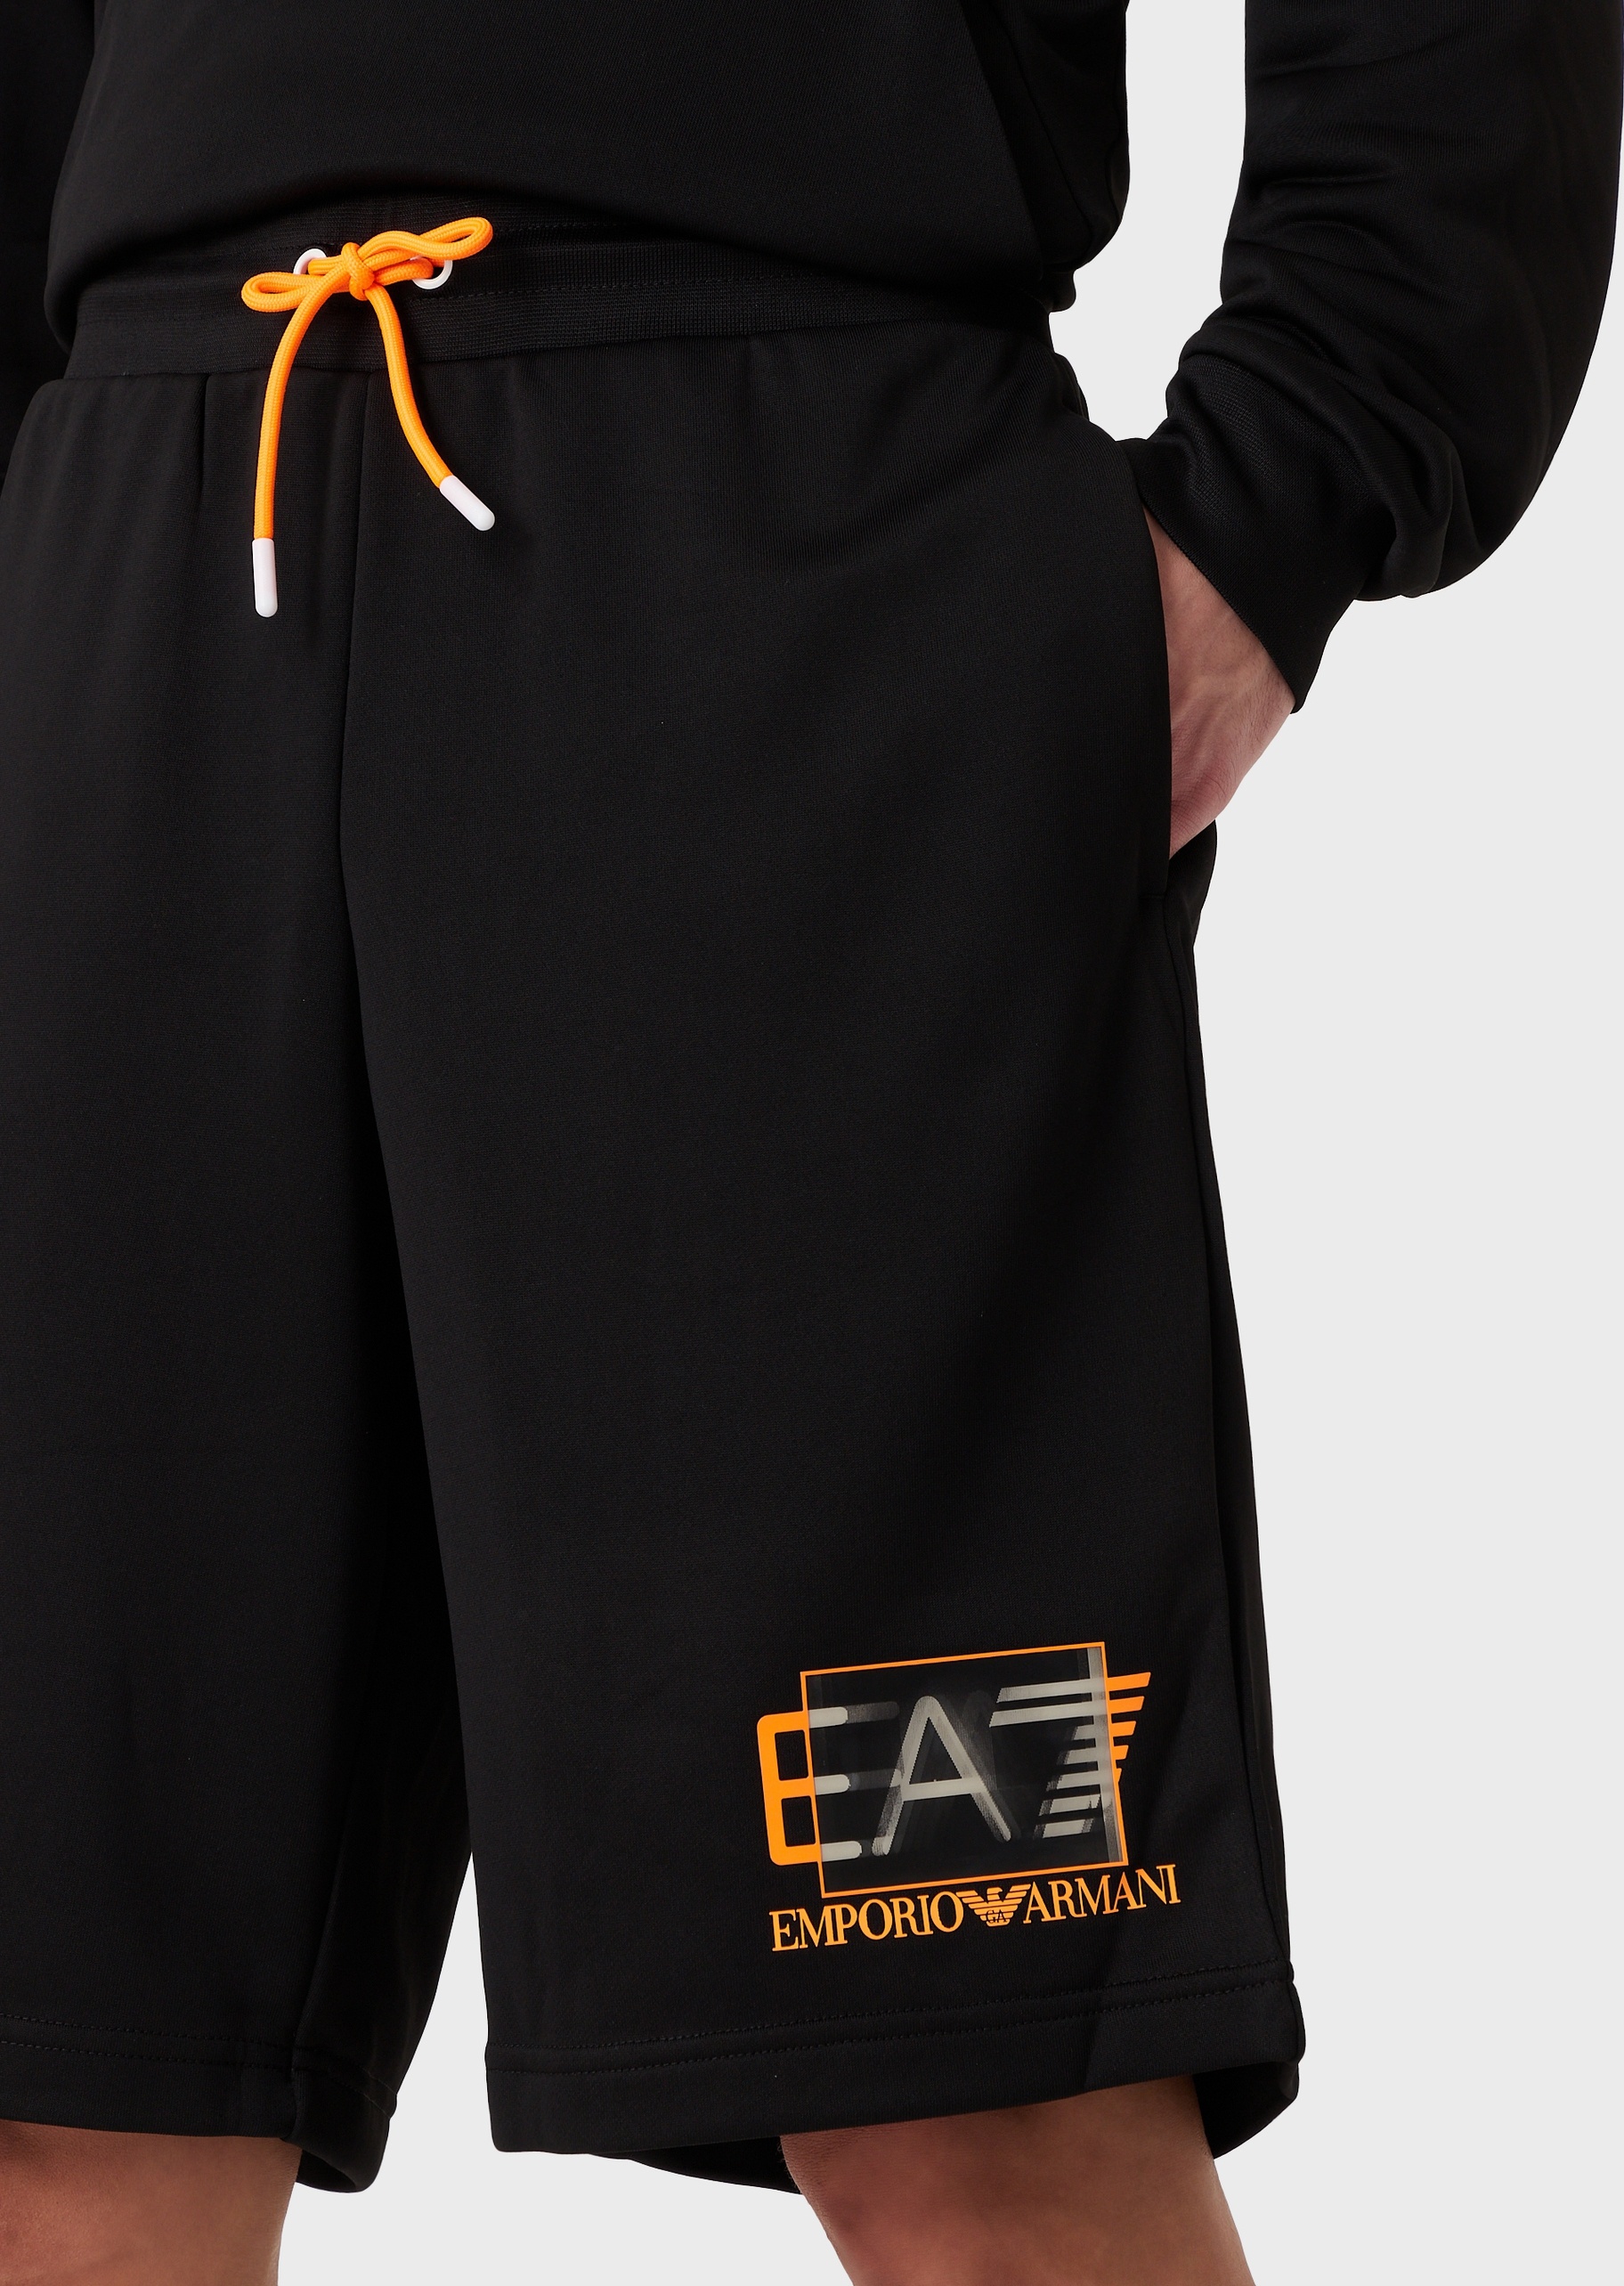 EA7 立体感百慕大短裤